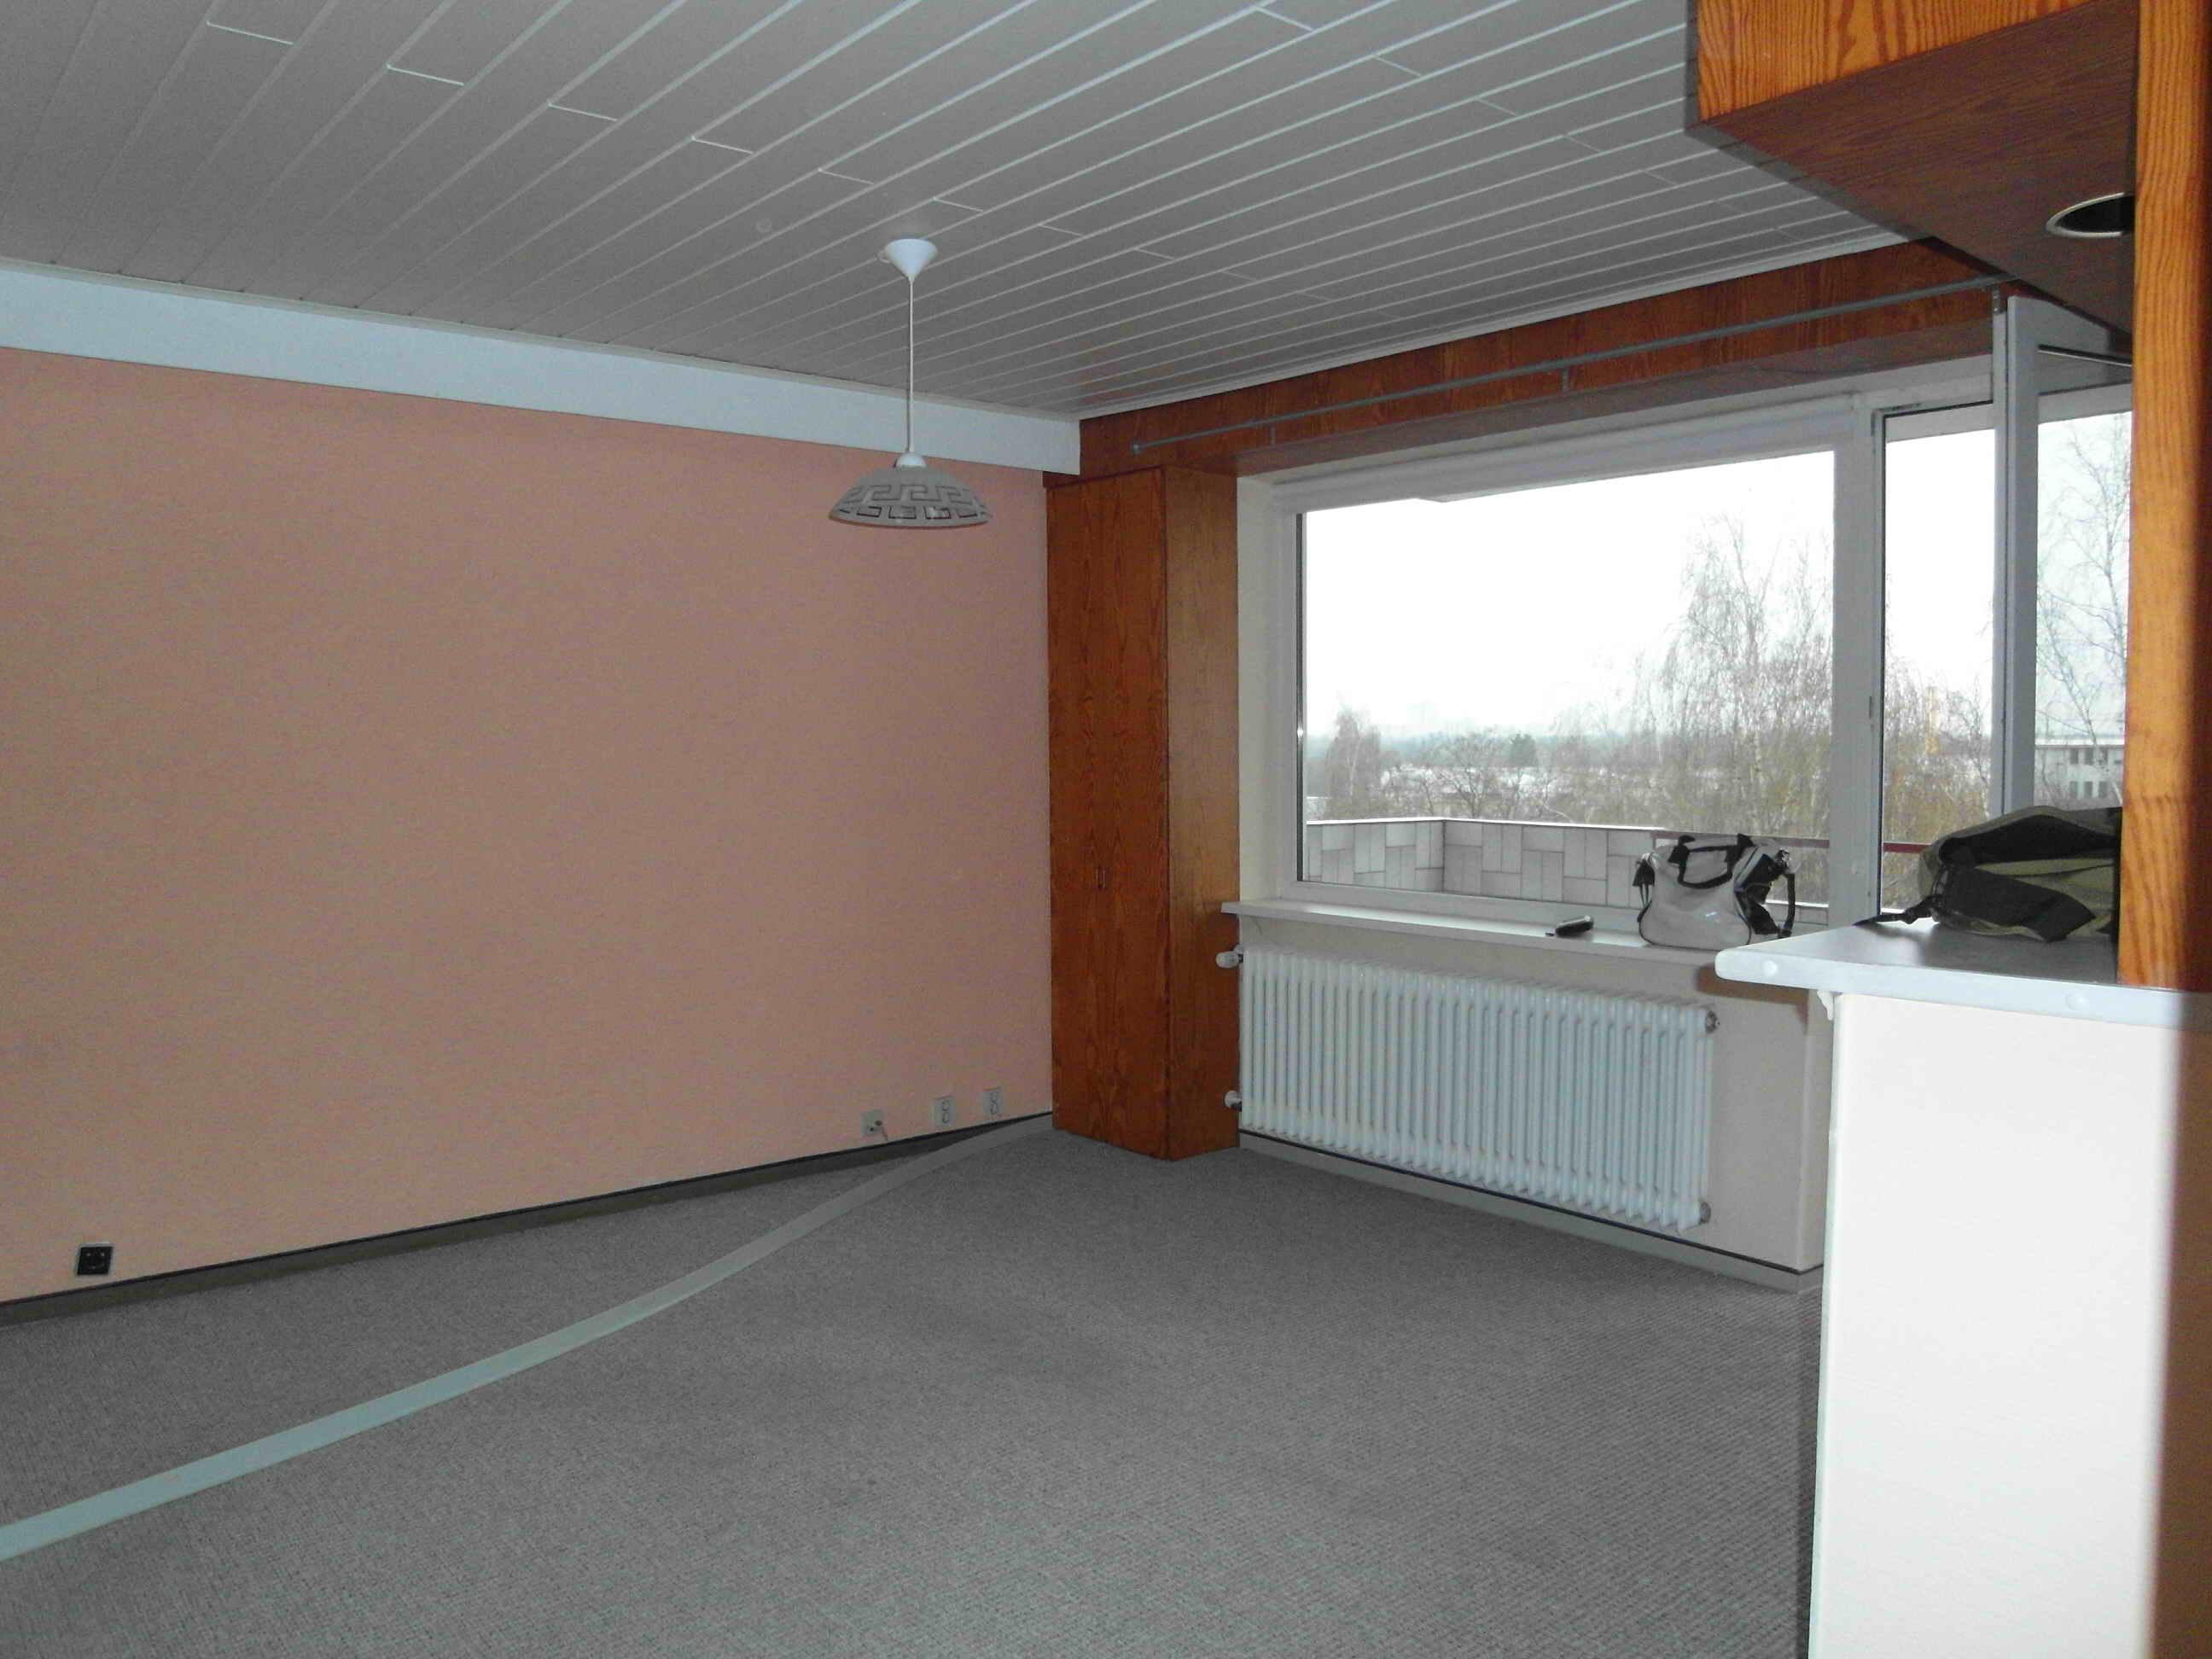 Wohnzimmer vor Neugestaltung #wohnzimmer #hängeleuchte ©artenstein